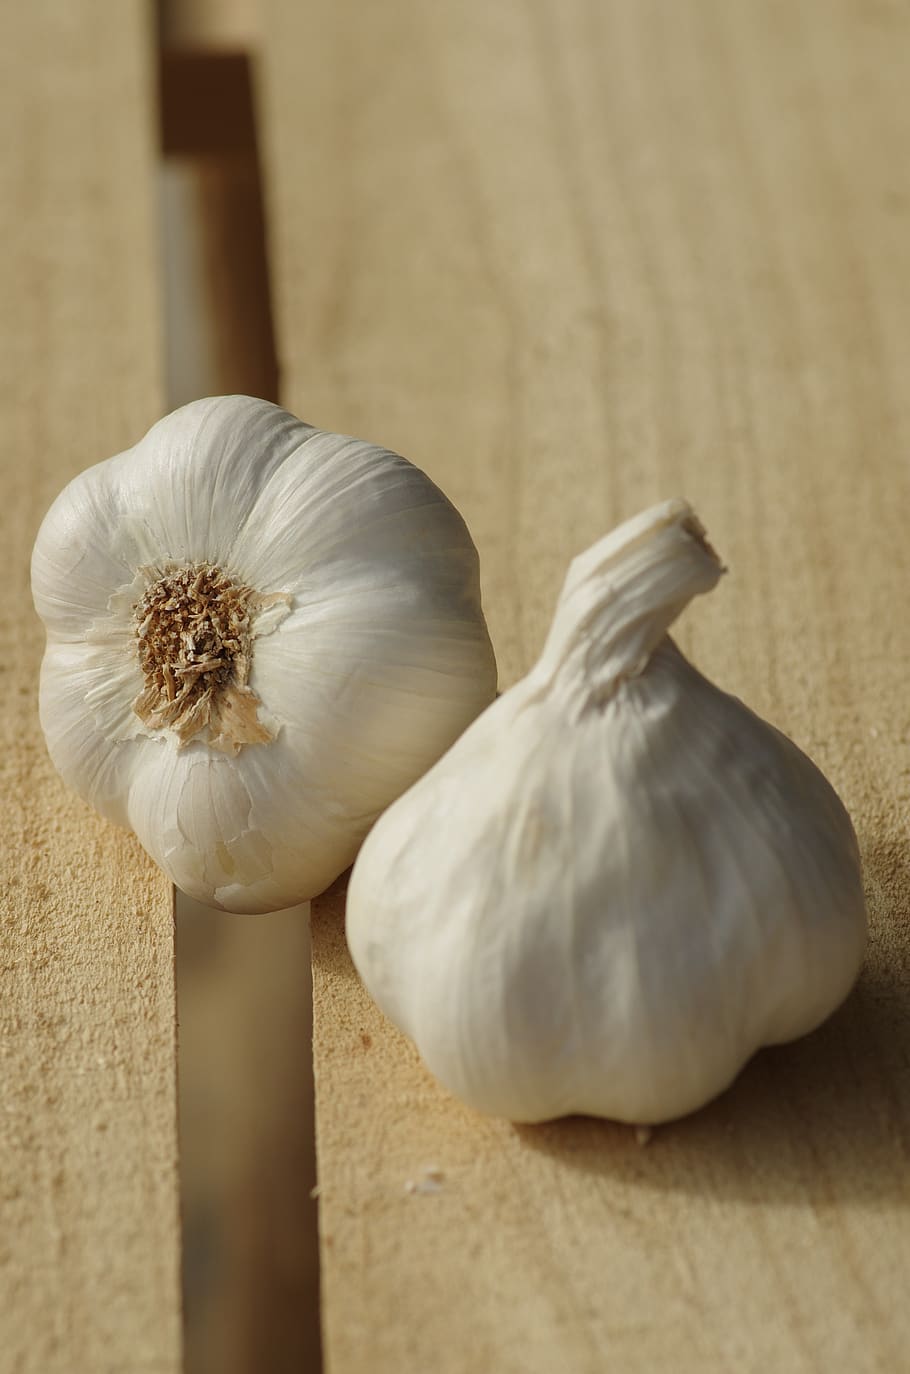 garlic, garlic white, garlic grown, food, harvest, vegetable